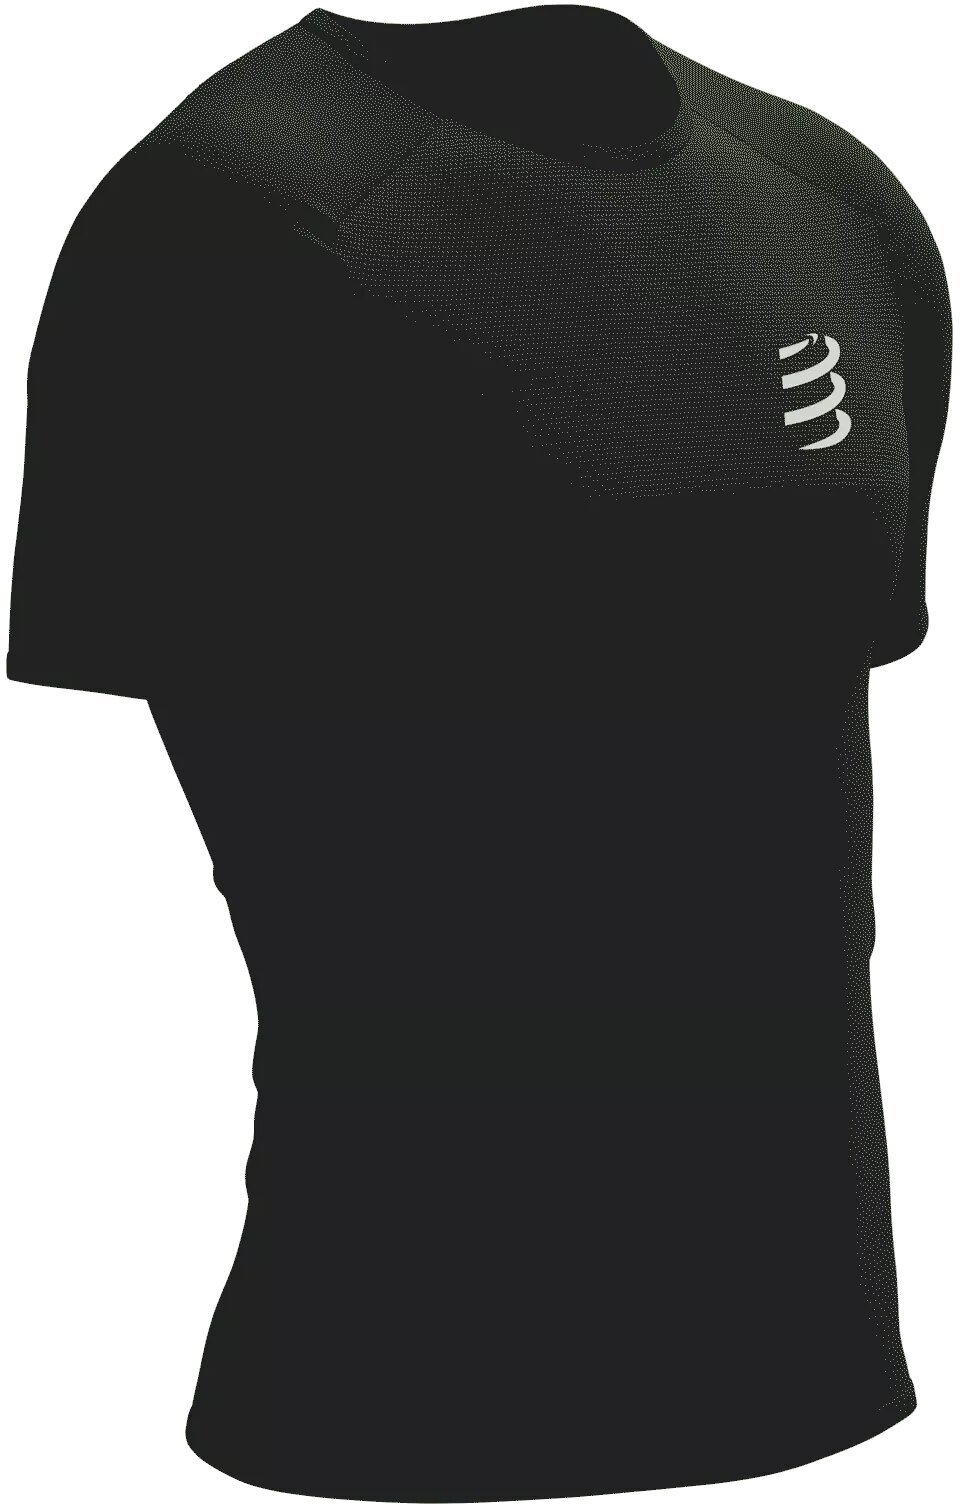 Ανδρικές Μπλούζες Τρεξίματος Kοντομάνικες Compressport Performance SS Tshirt M Black/White M Ανδρικές Μπλούζες Τρεξίματος Kοντομάνικες